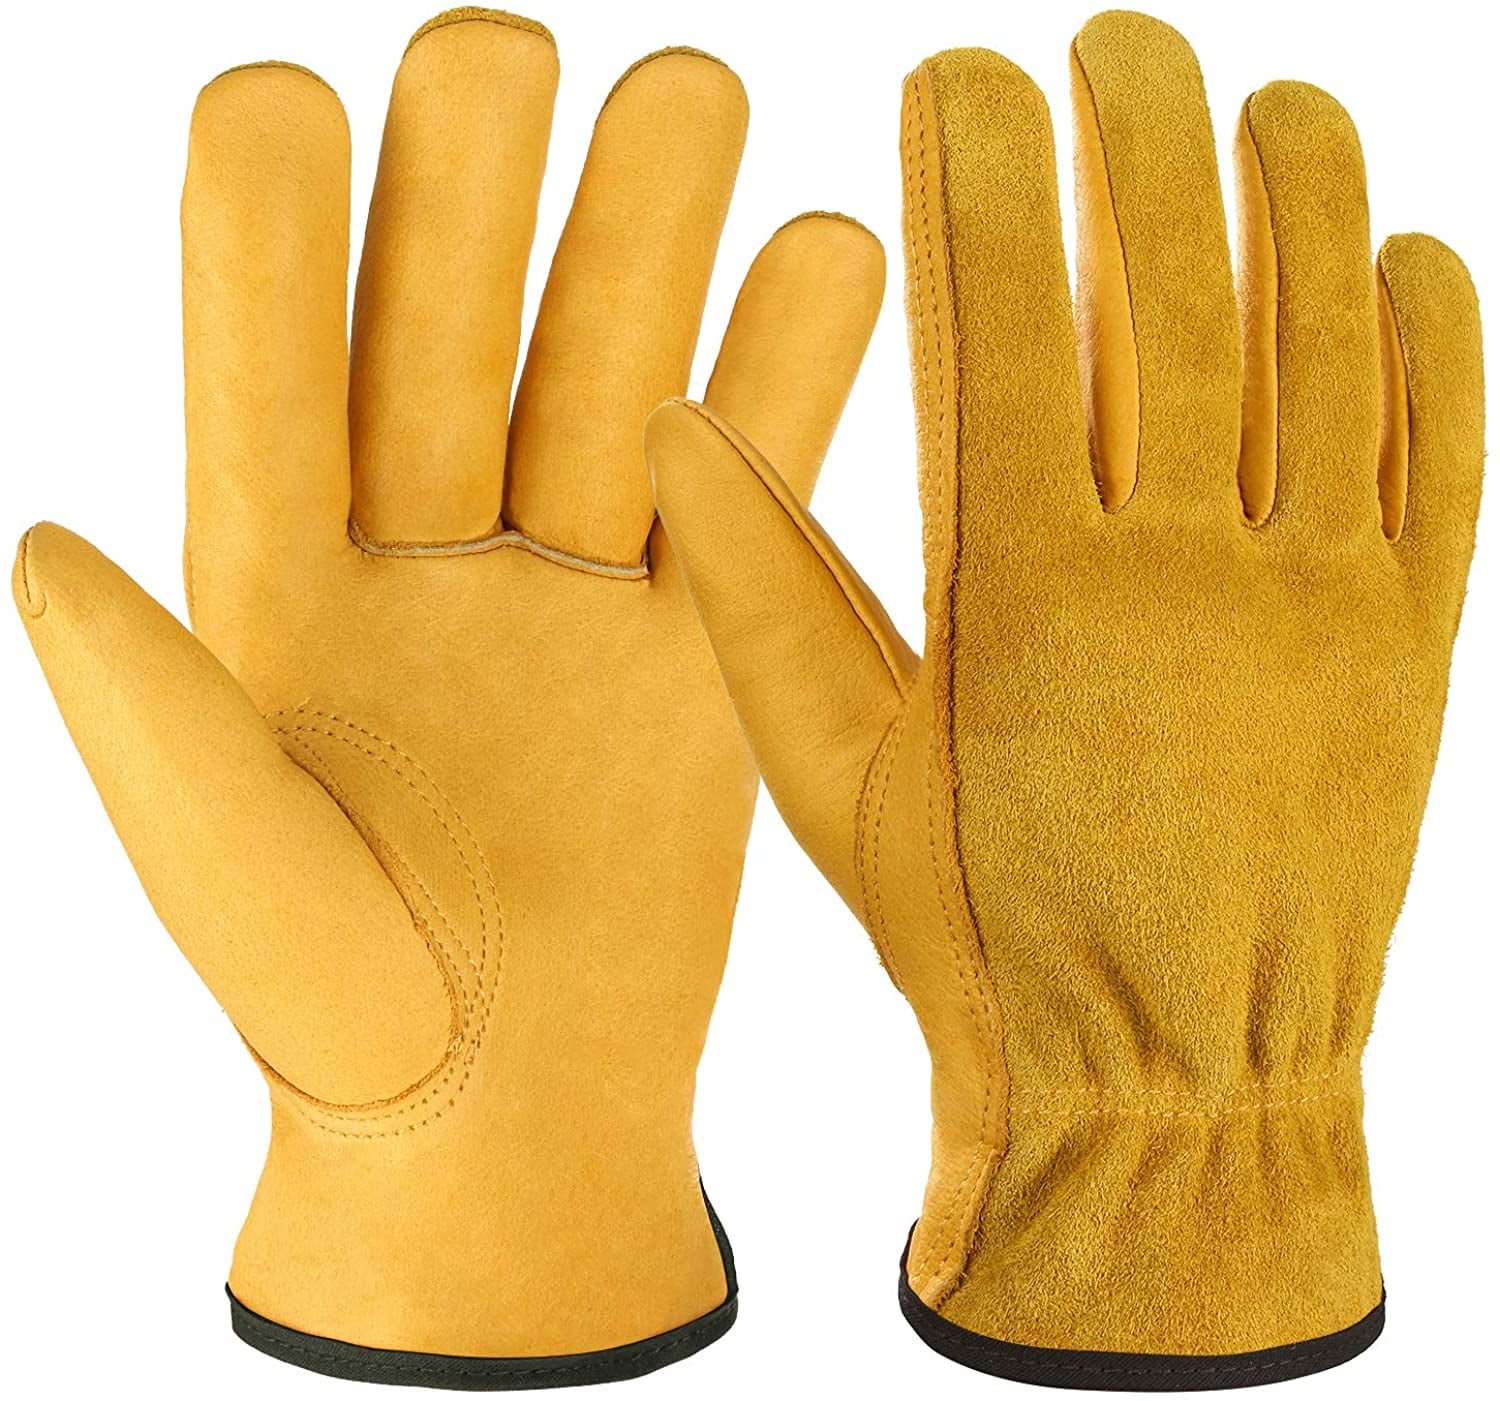 Lightweight Breathable No-Slip Canvas Garden Gloves Construction Work Gloves 